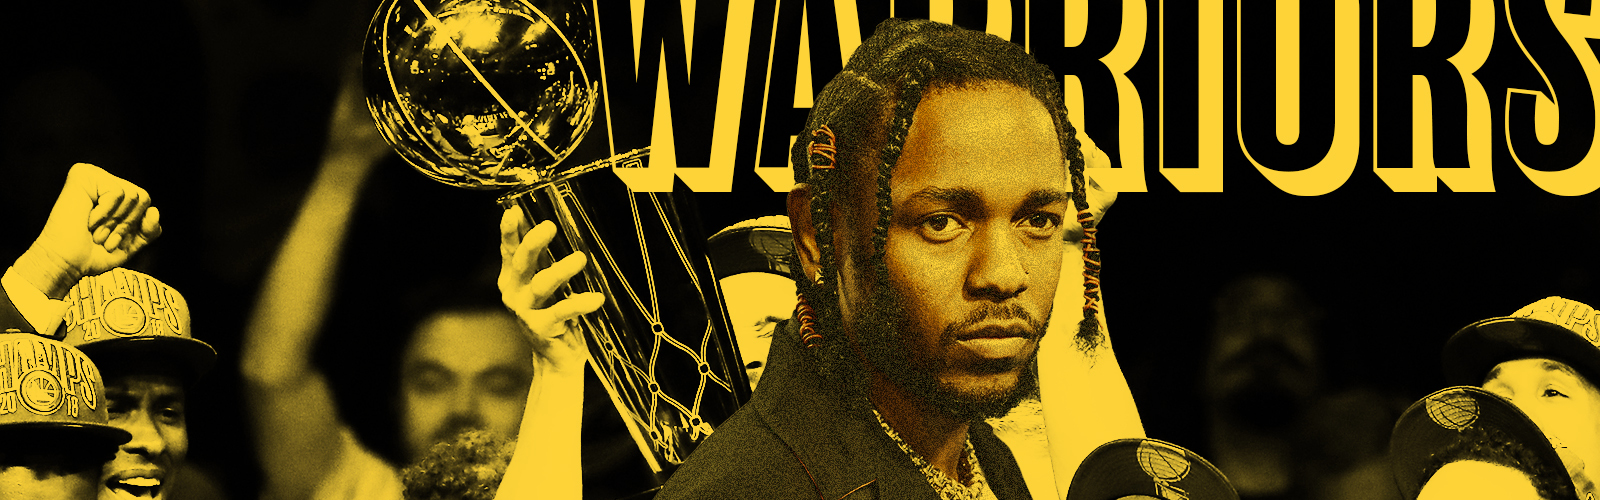 Kendrick Lamar Warriors